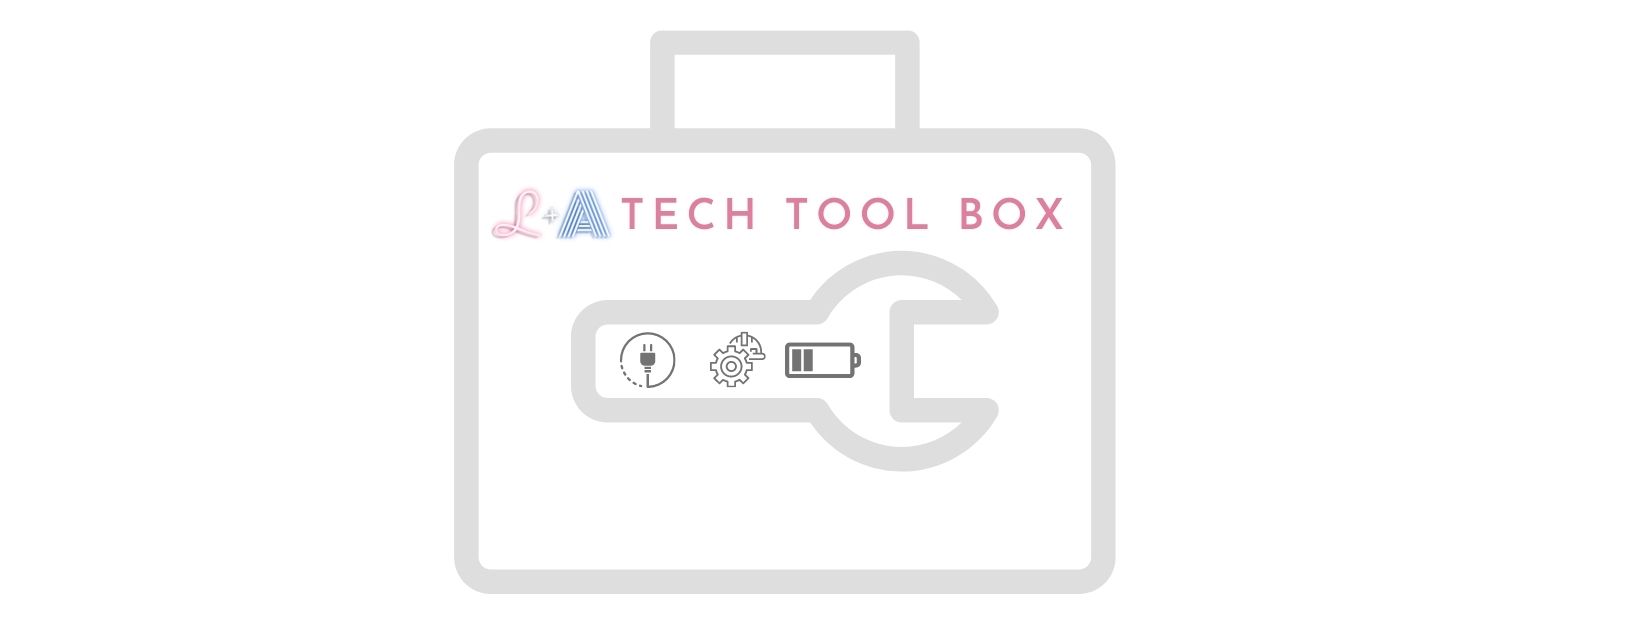 tech tool box